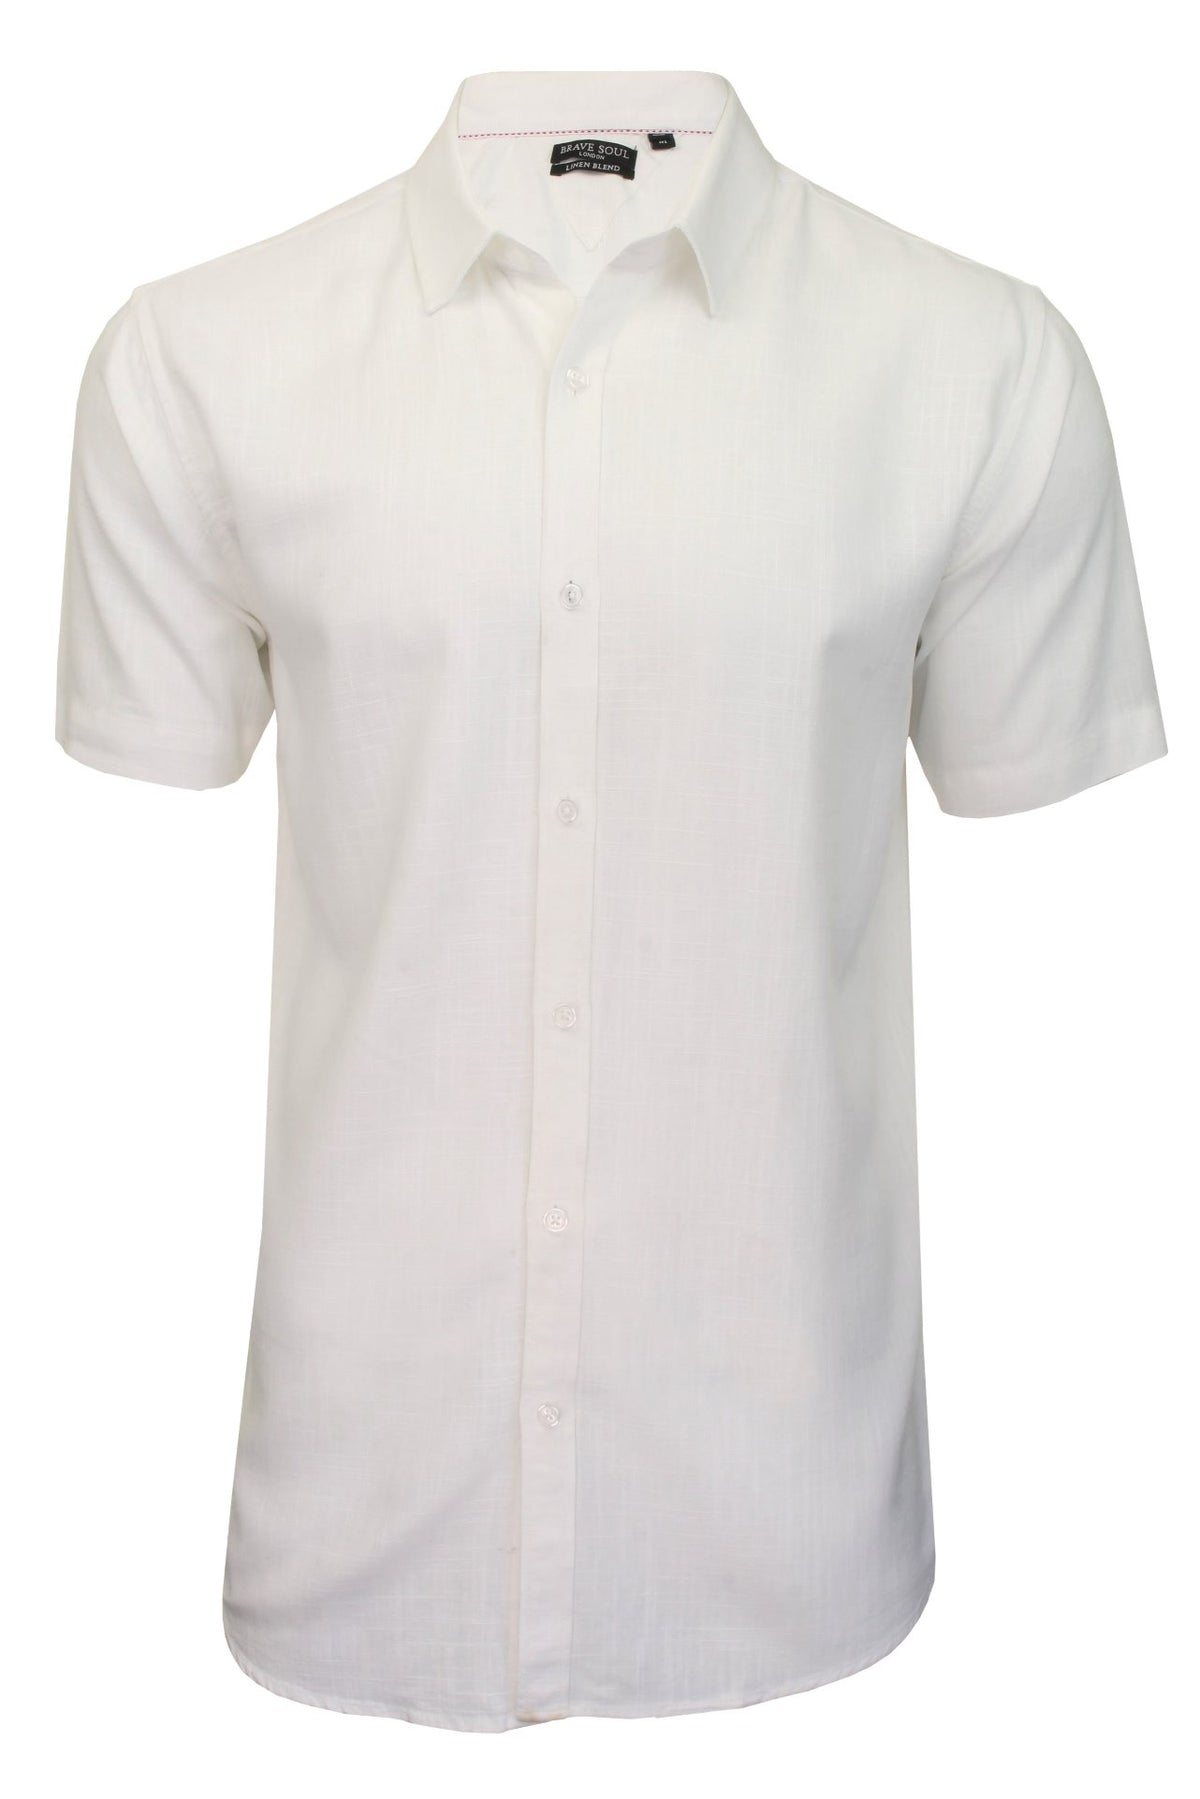 Brave Soul Mens Linen Shirt 'ESK' - Short Sleeved, 01, Msh-508Esk, Optic White